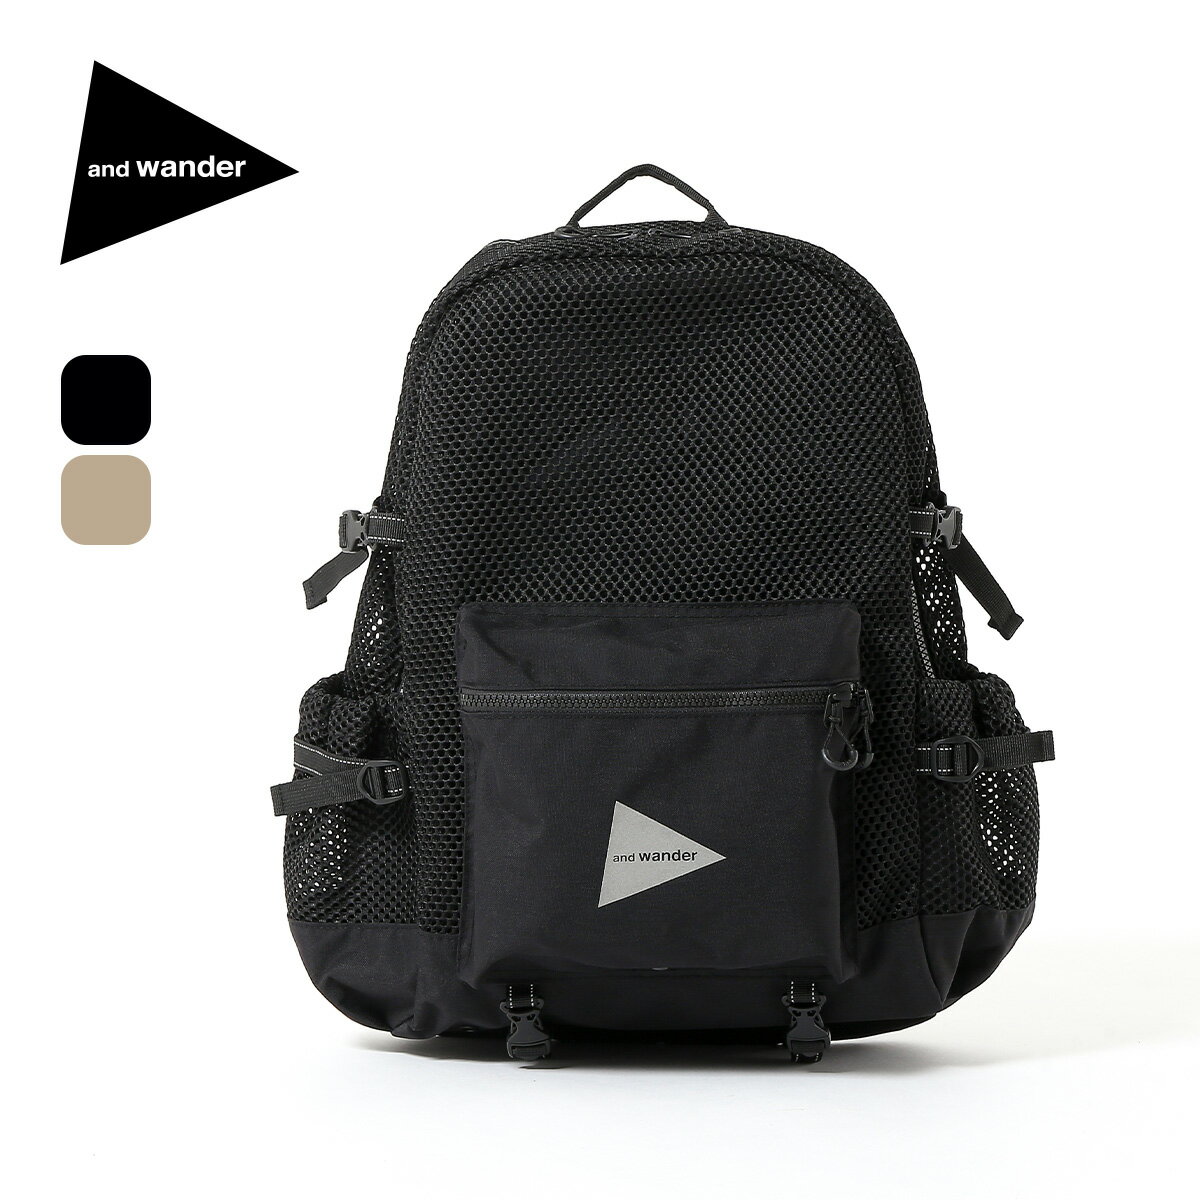 アンドワンダー 3Dメッシュバックパック and wander 3D mesh backpack 5744975223 バッグ バックパック リュック キャンプ アウトドア 【正規品】